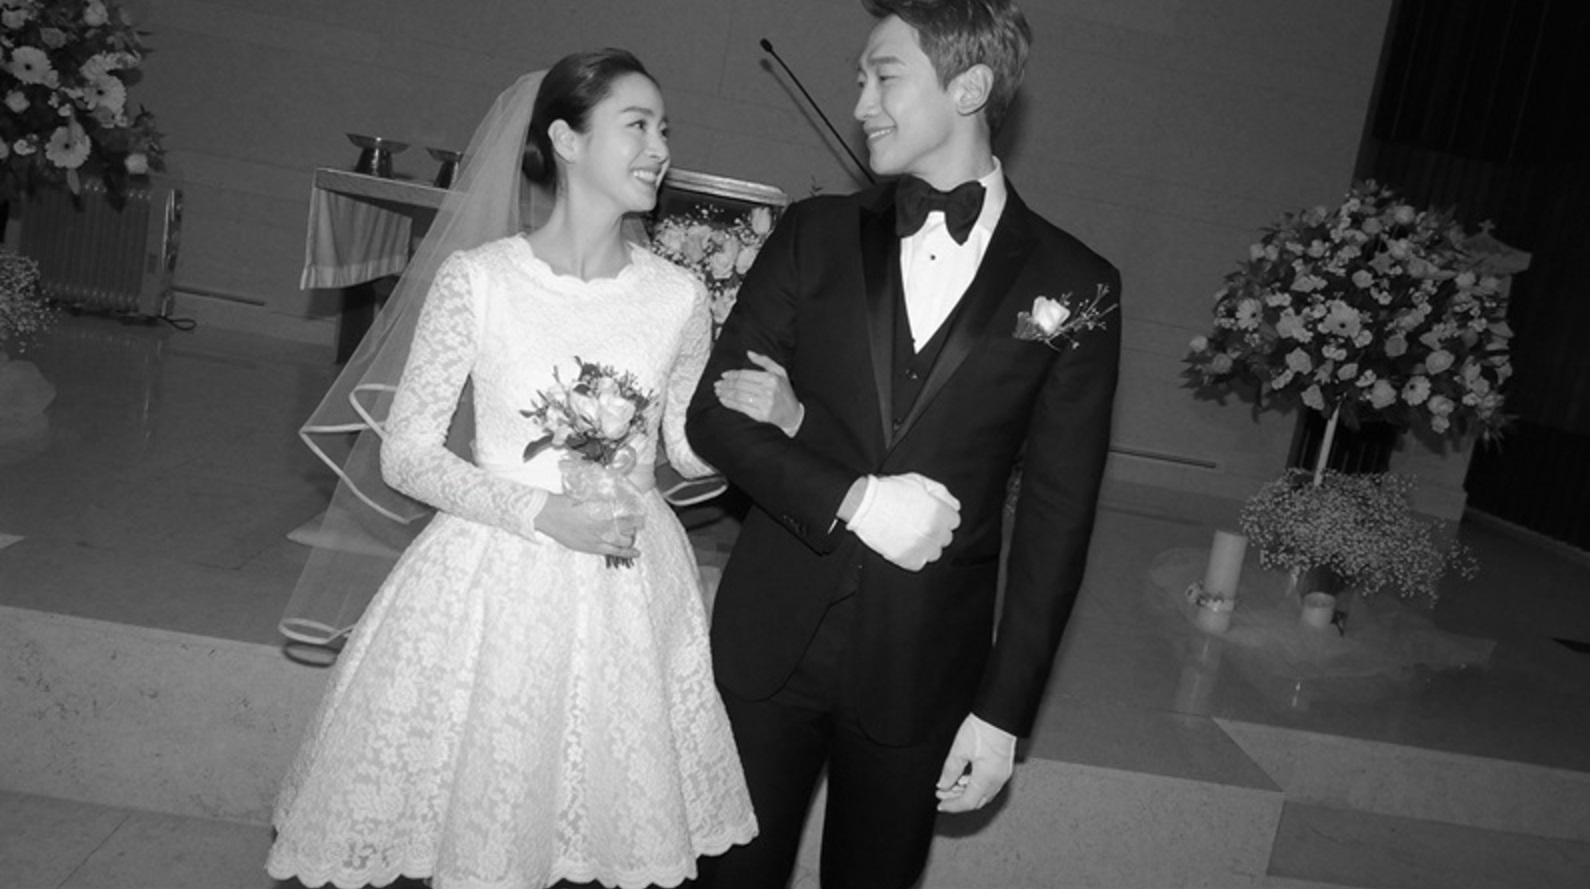 So kè váy cưới tứ đại mỹ nhân Hàn: Song Hye Kyo thất thế dù chơi lớn, Son Ye Jin đẹp không điểm trừ - Ảnh 8.